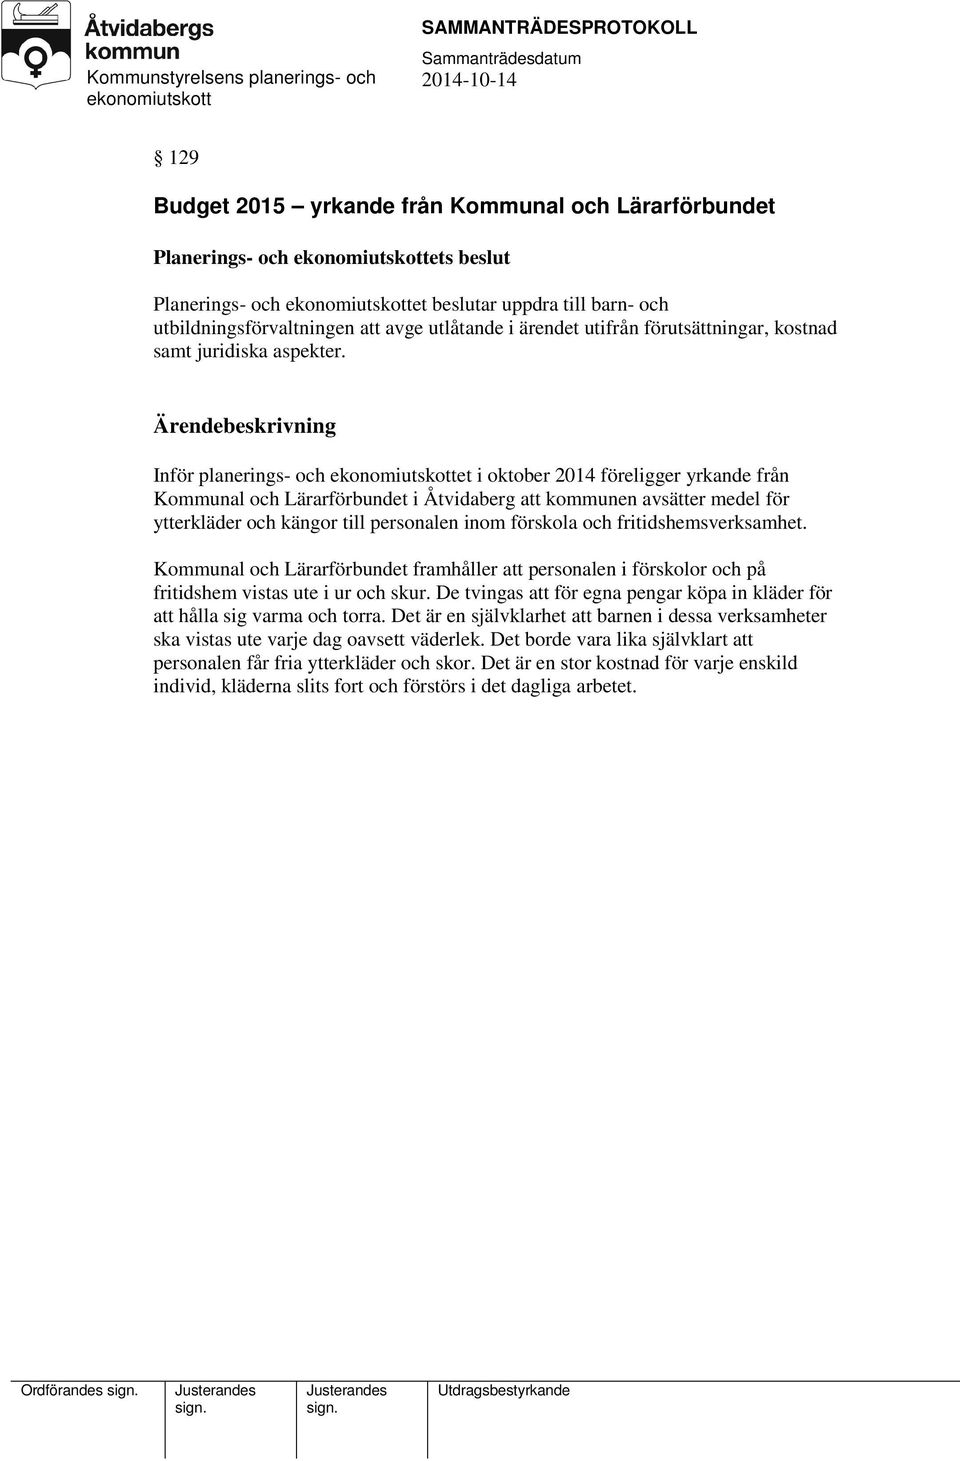 Inför planerings- och et i oktober 2014 föreligger yrkande från Kommunal och Lärarförbundet i Åtvidaberg att kommunen avsätter medel för ytterkläder och kängor till personalen inom förskola och